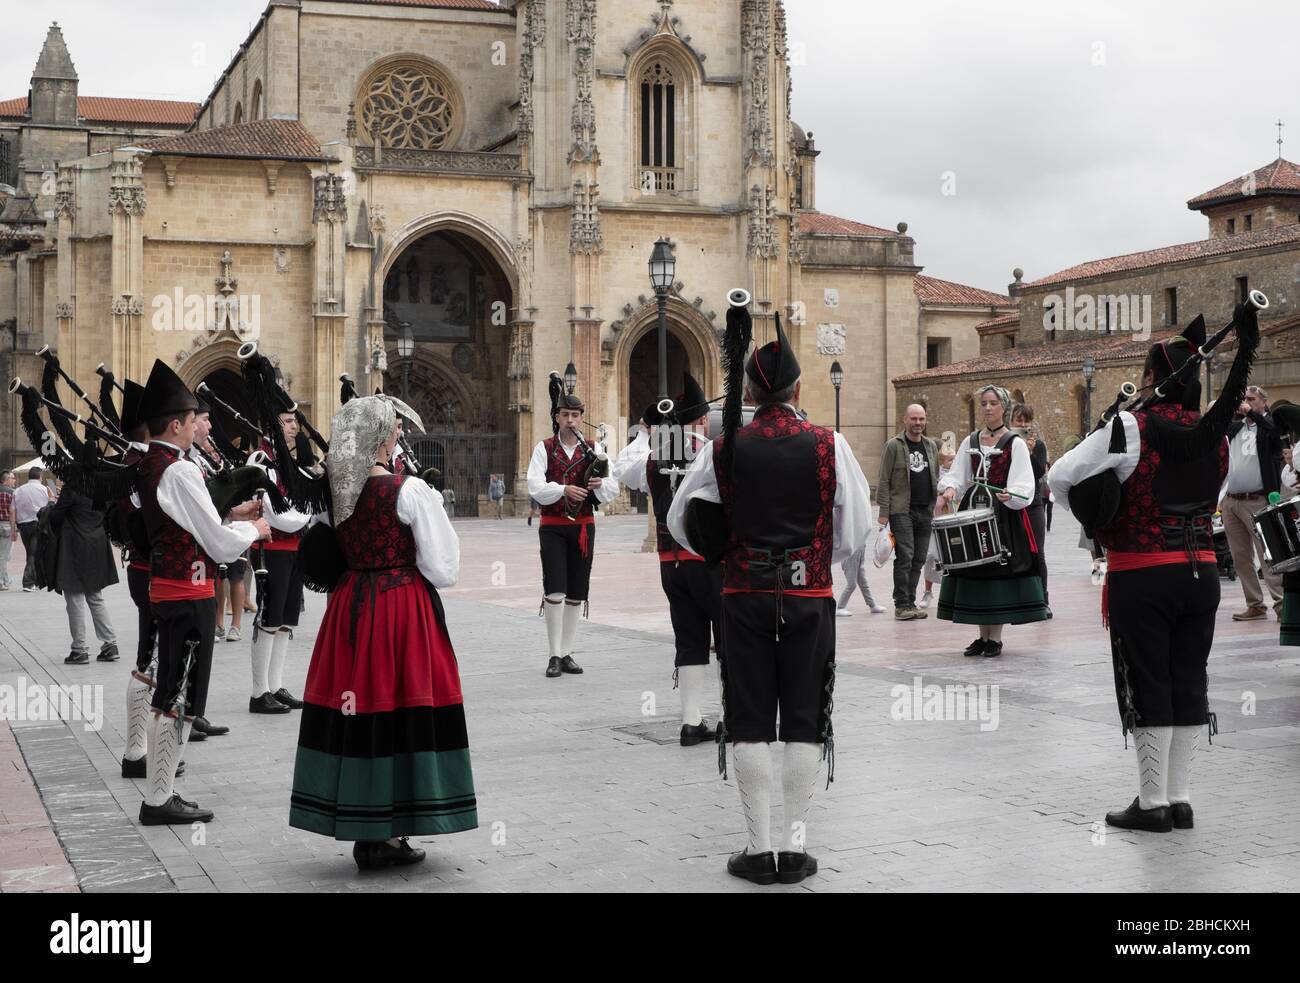 Traje tradicional asturias fotografías e imágenes de alta resolución - Alamy